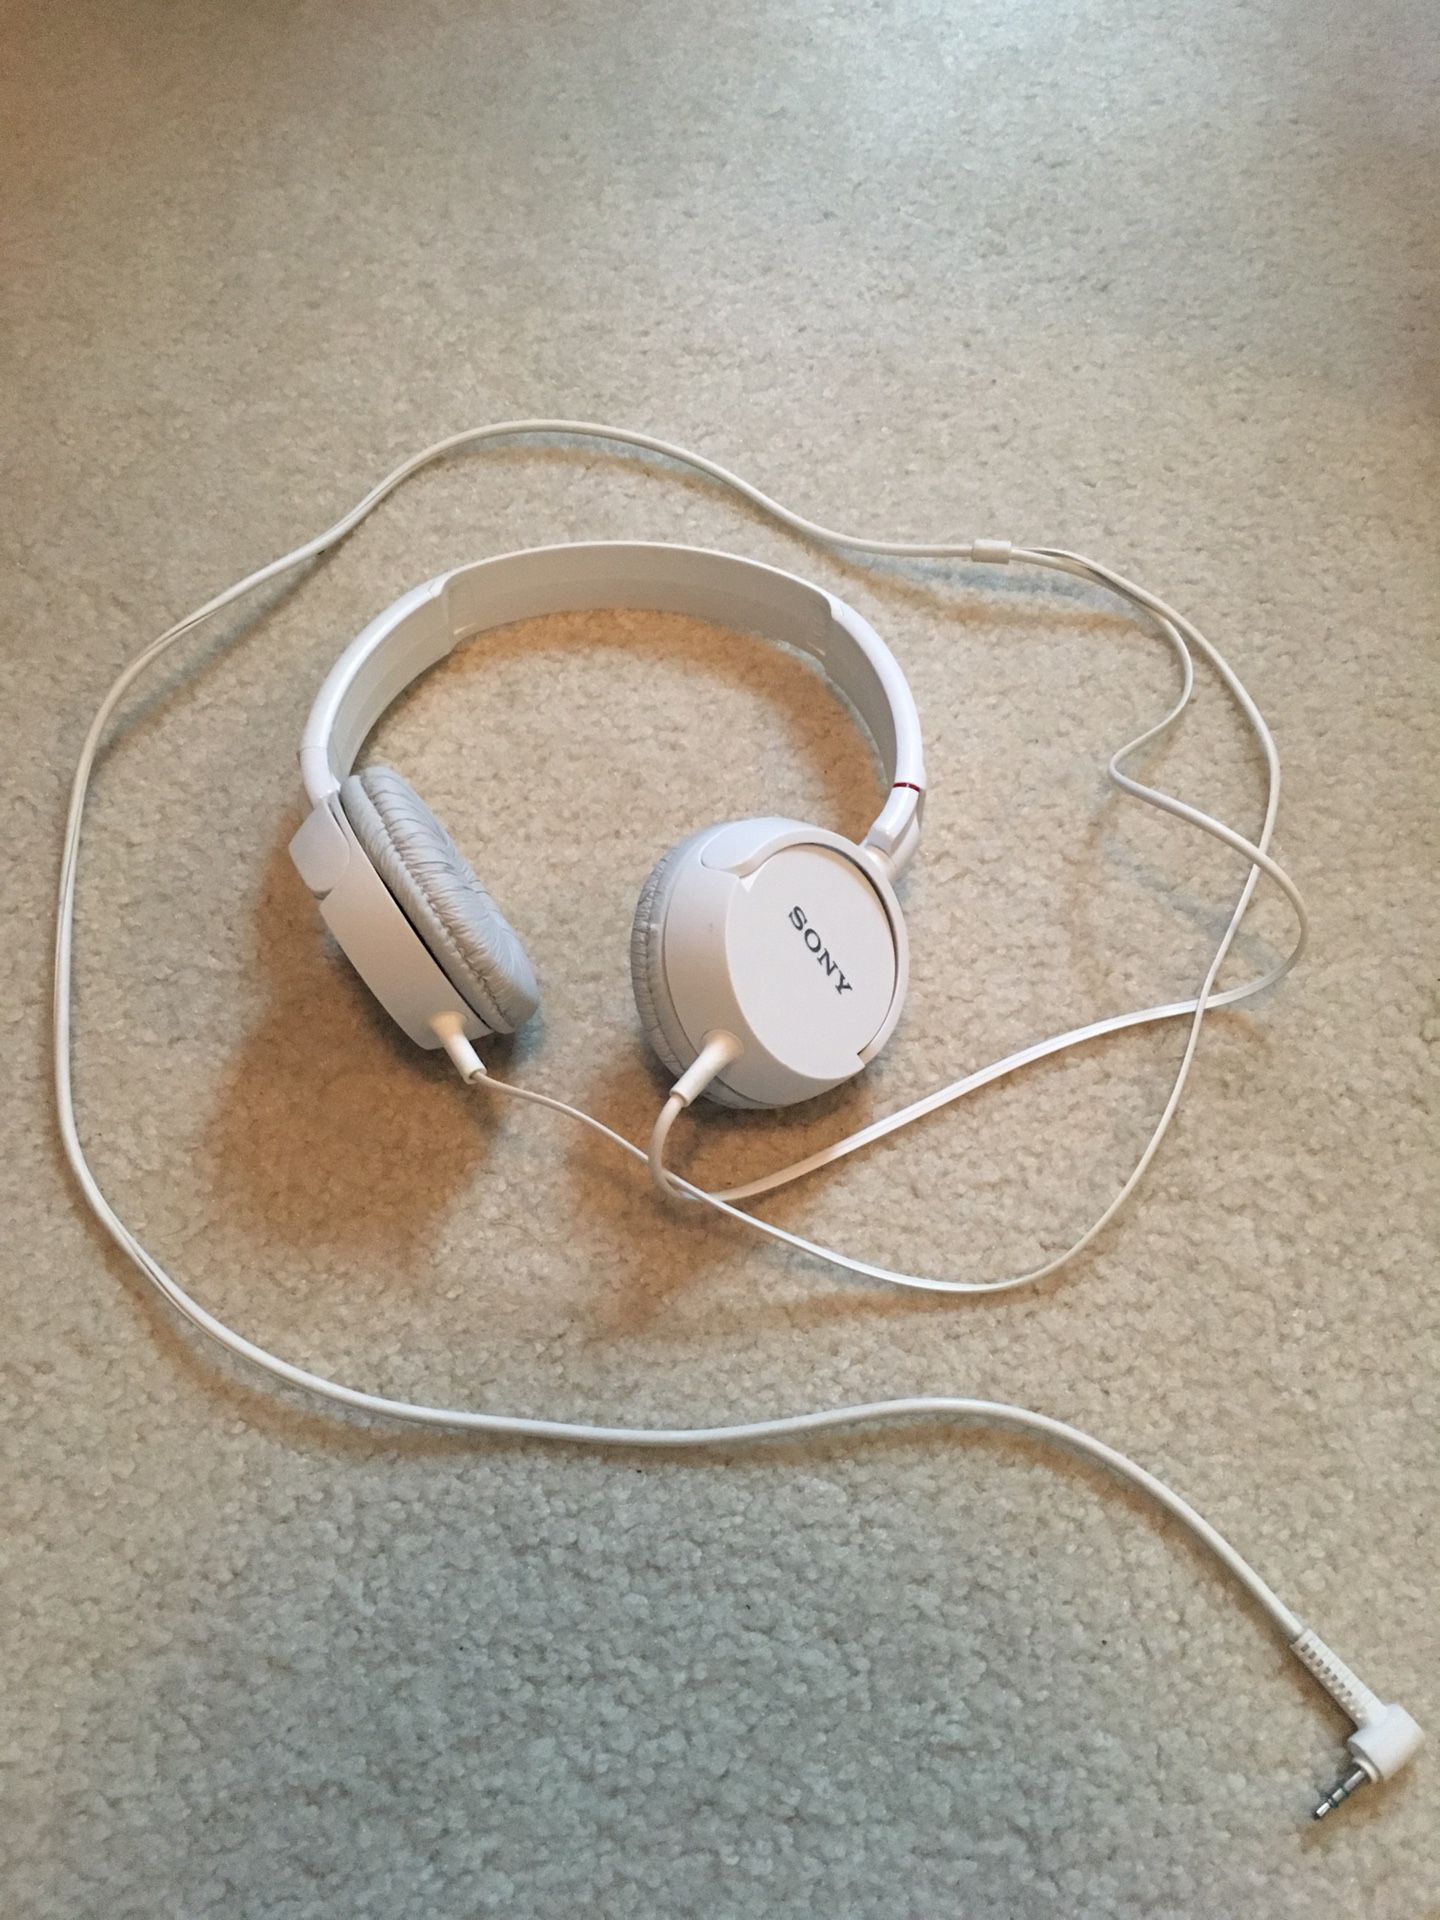 Sony White Headphones